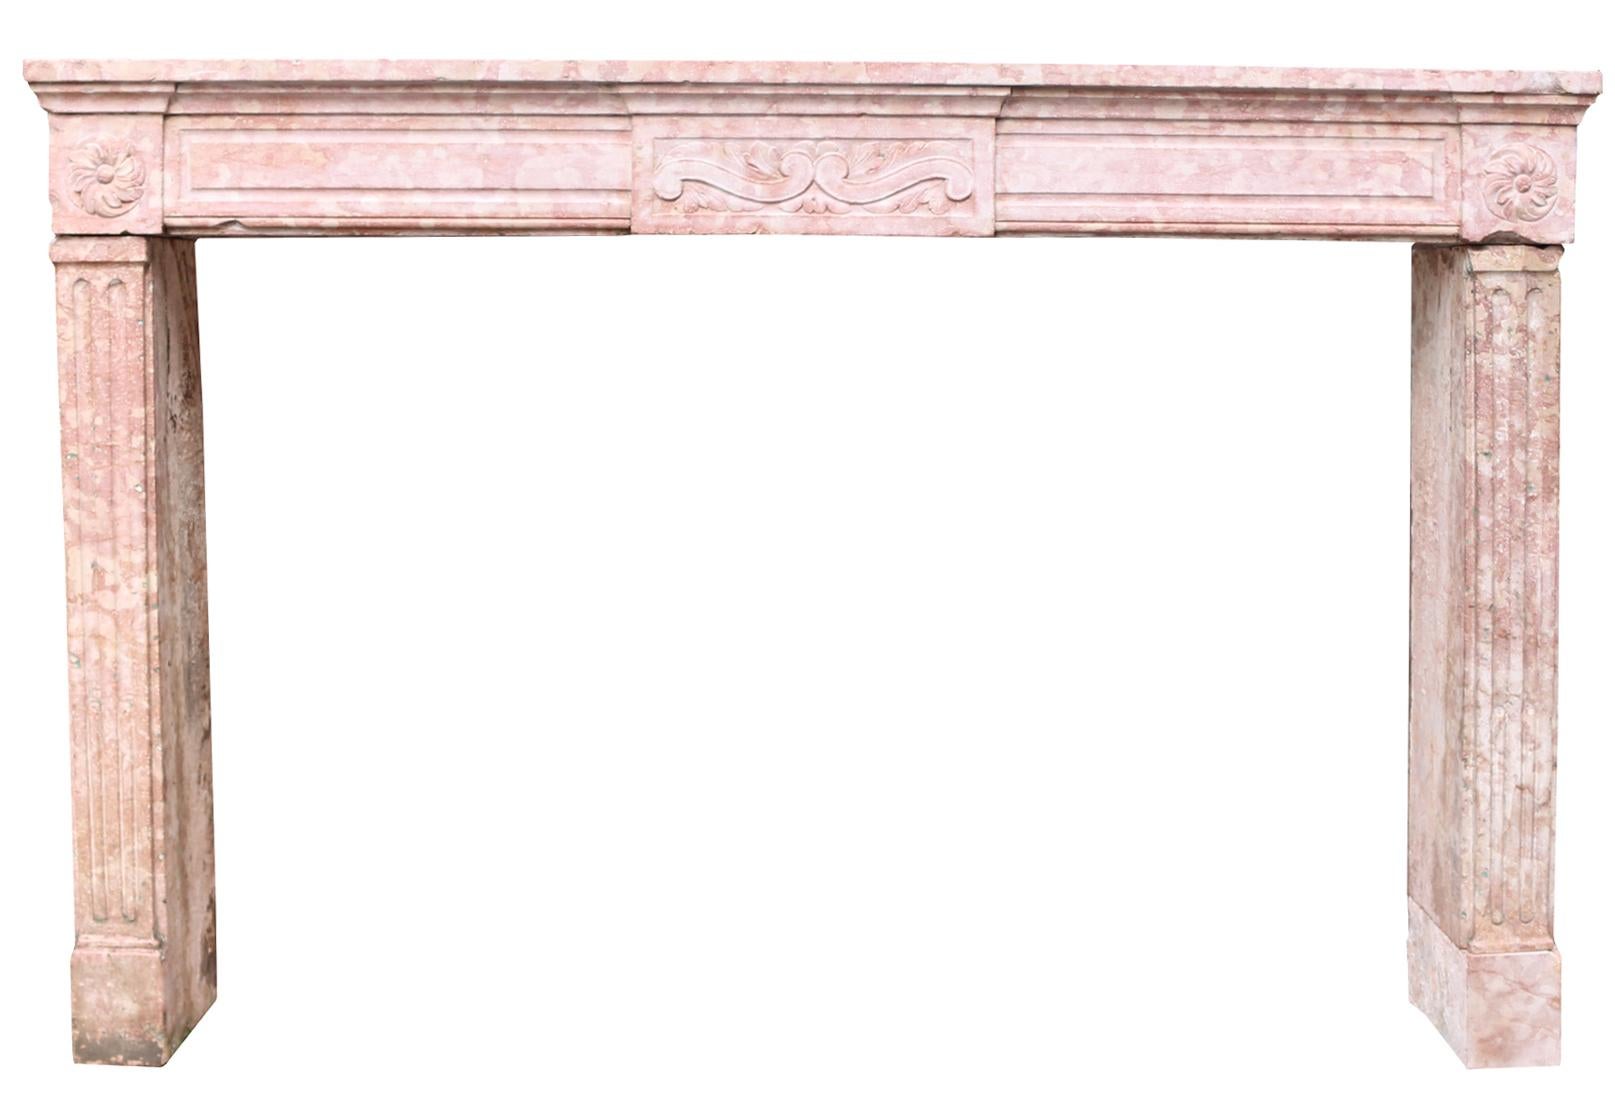 Cheminée d'époque Louis XVI en Pierre de Bourguignon, pierre de Bourgogne aux caractéristiques proches du marbre. France, fin du 18e siècle. Tons crème et rose pâles.

Dimensions supplémentaires

Hauteur d'ouverture 96,5 cm

Largeur